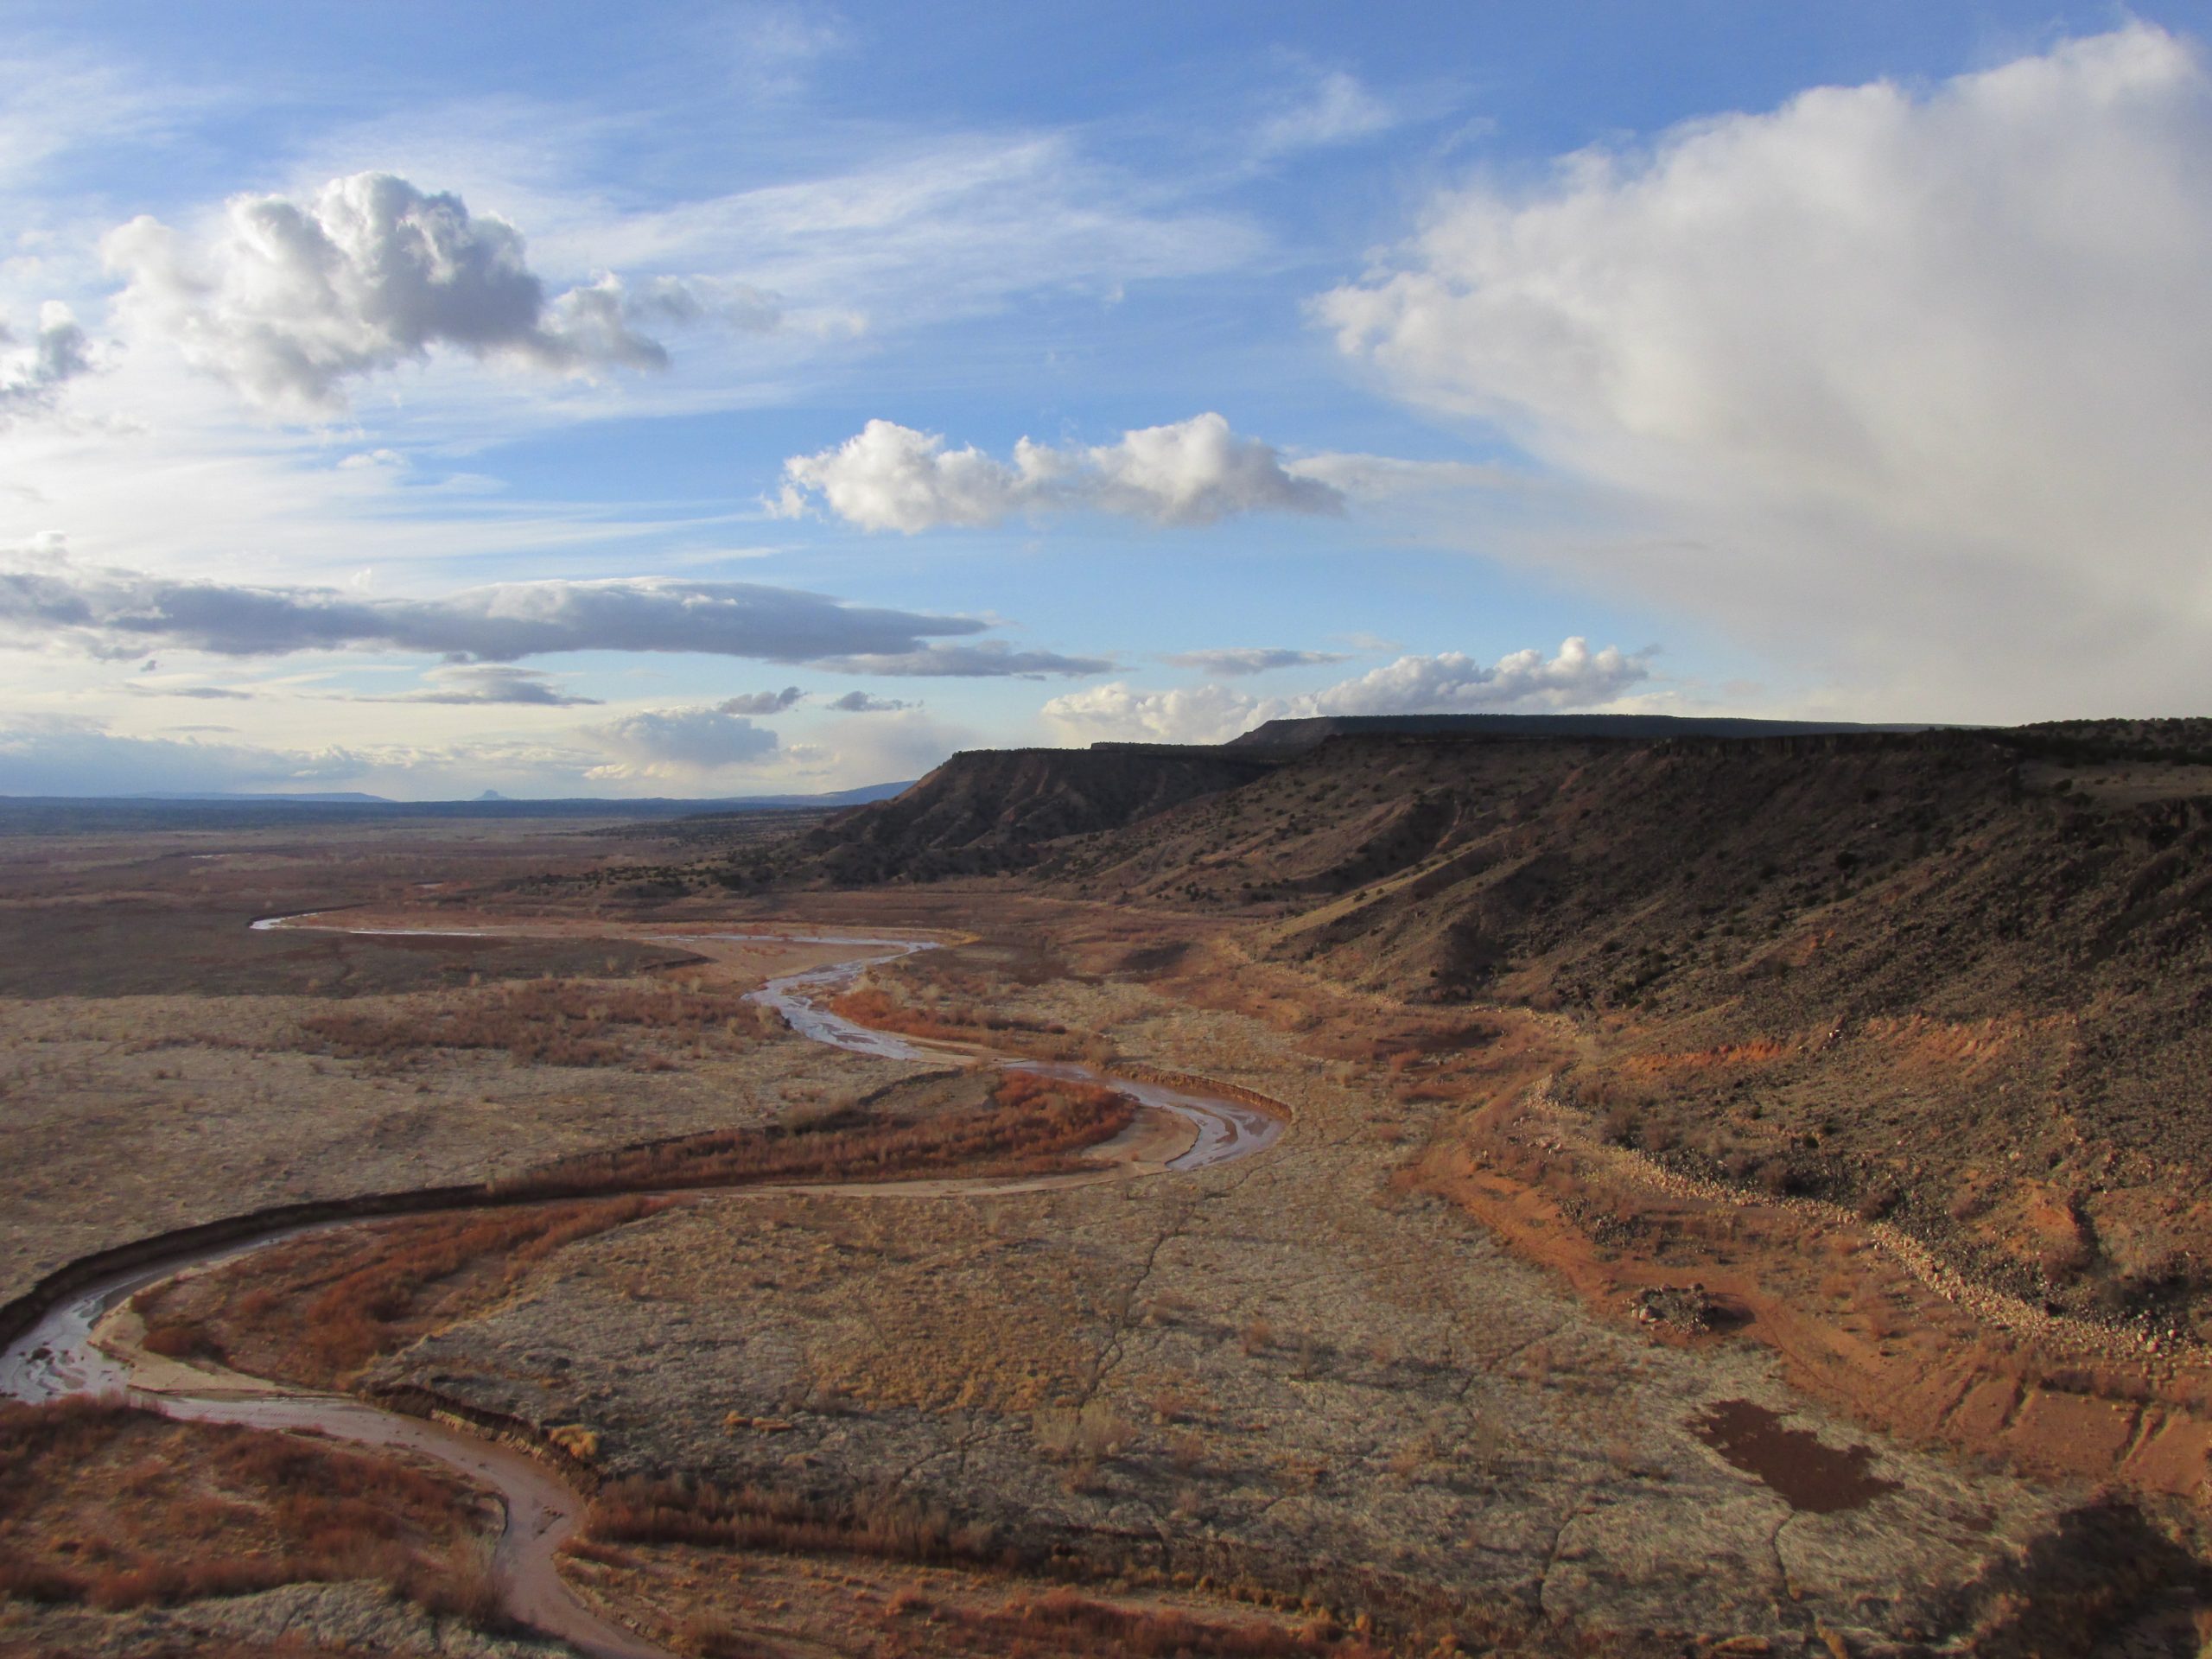 Jamez River in New Mexico